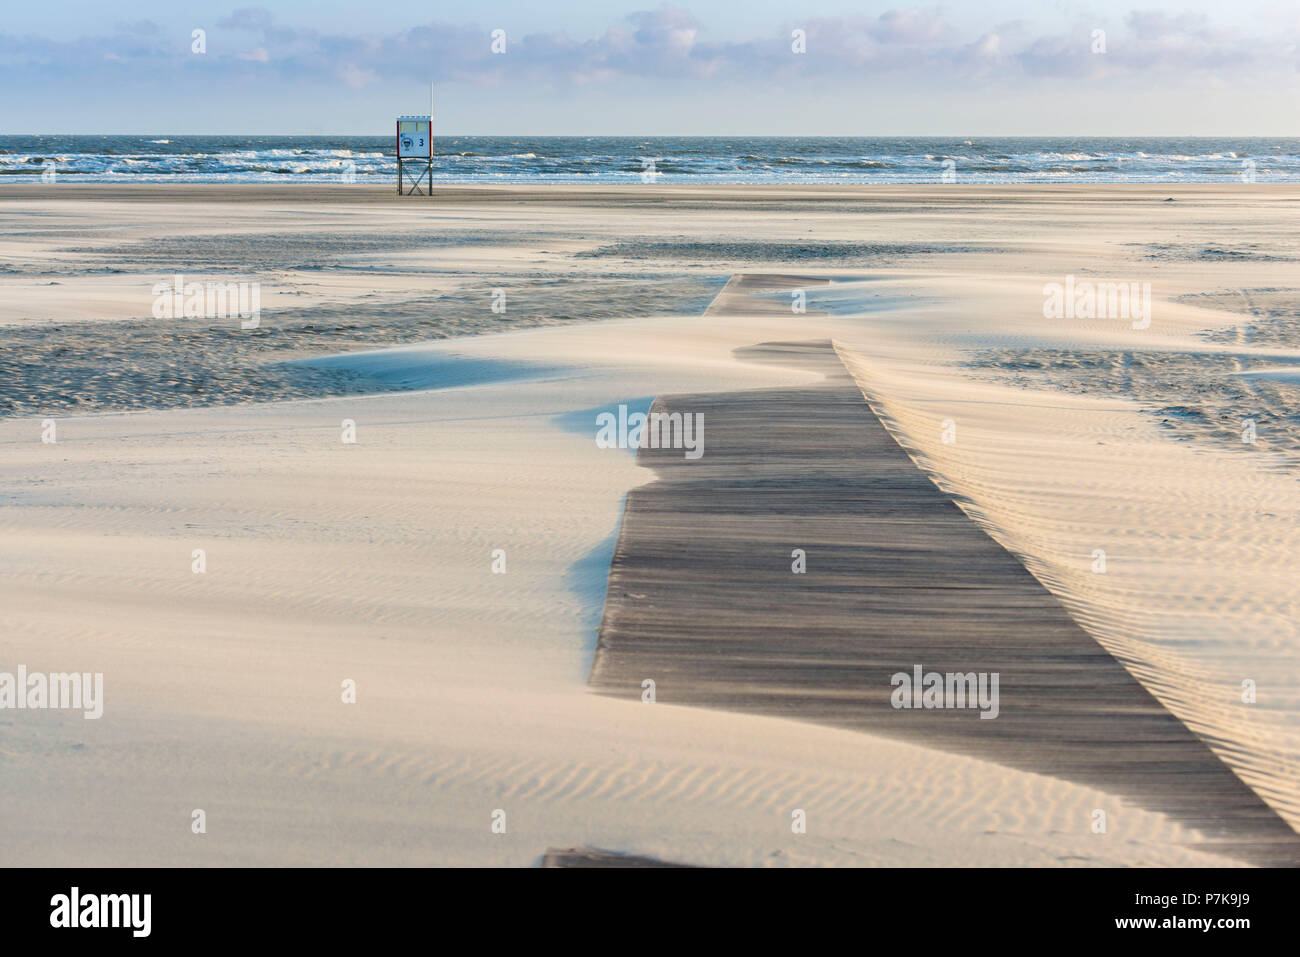 Deutschland Niedersachsen Ostfriesland Juist Am Strand Wahrend Der Sturm Mit Sandverwehungen Stockfotografie Alamy